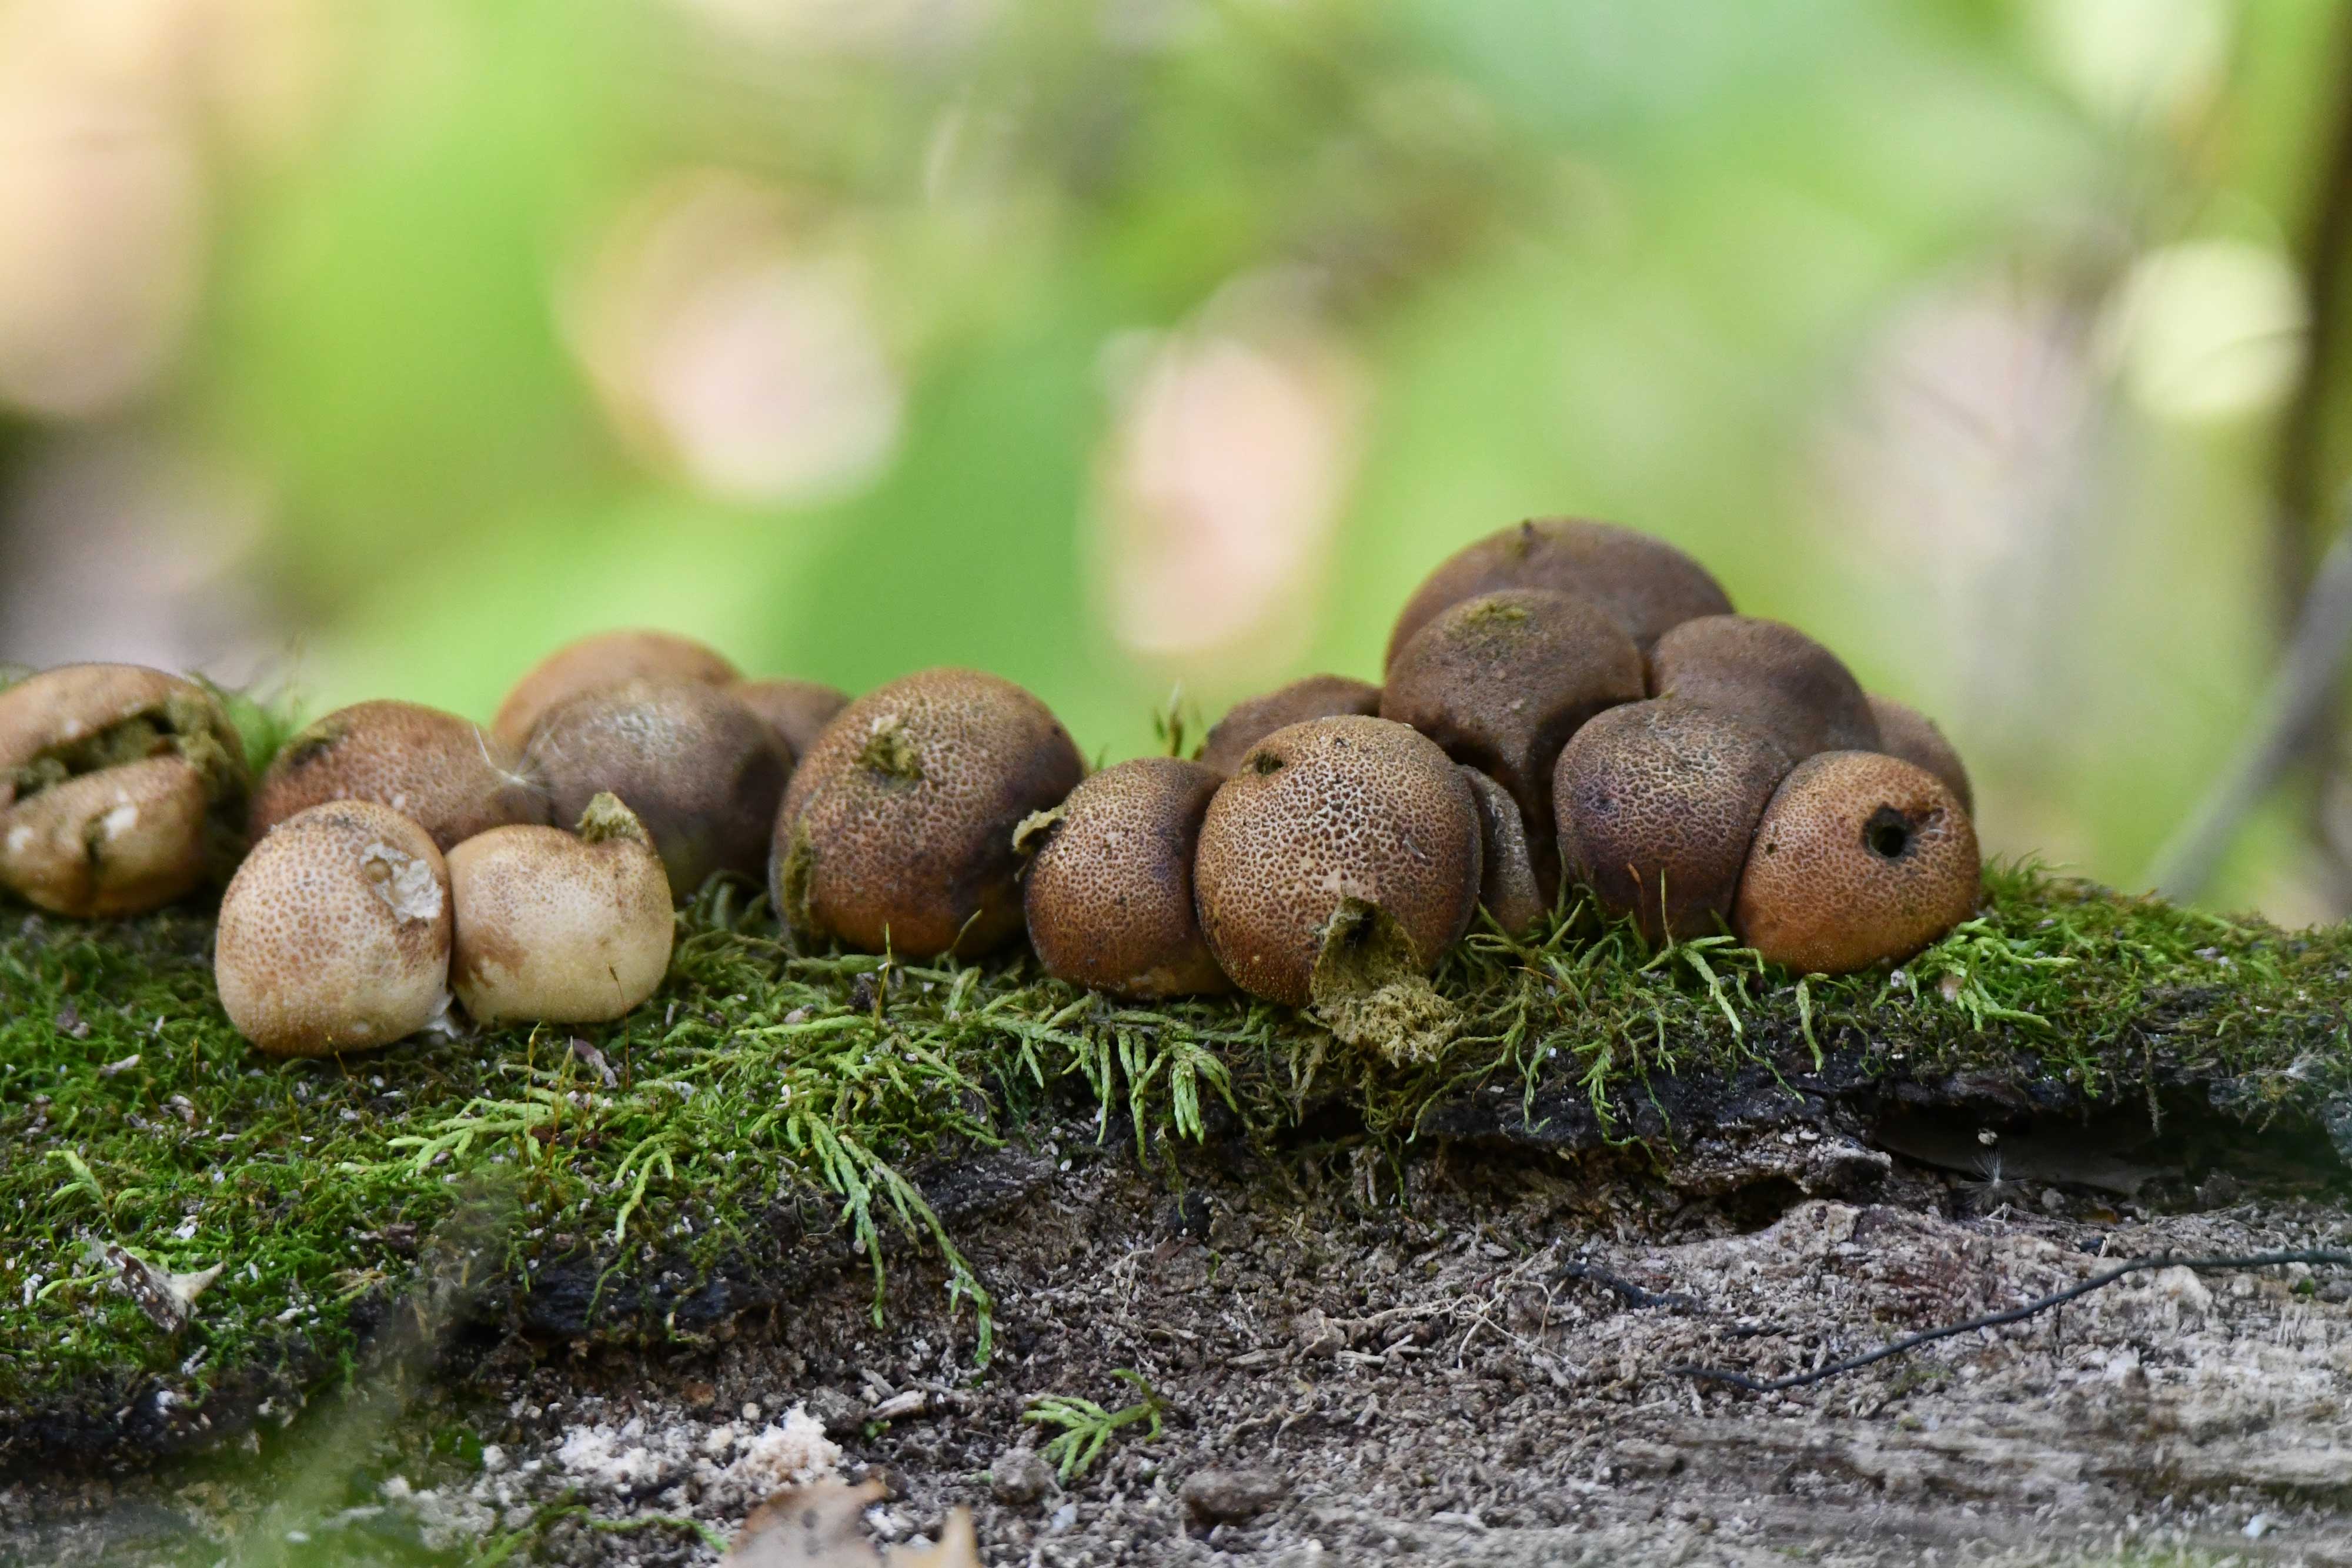 Brown fungus on a log